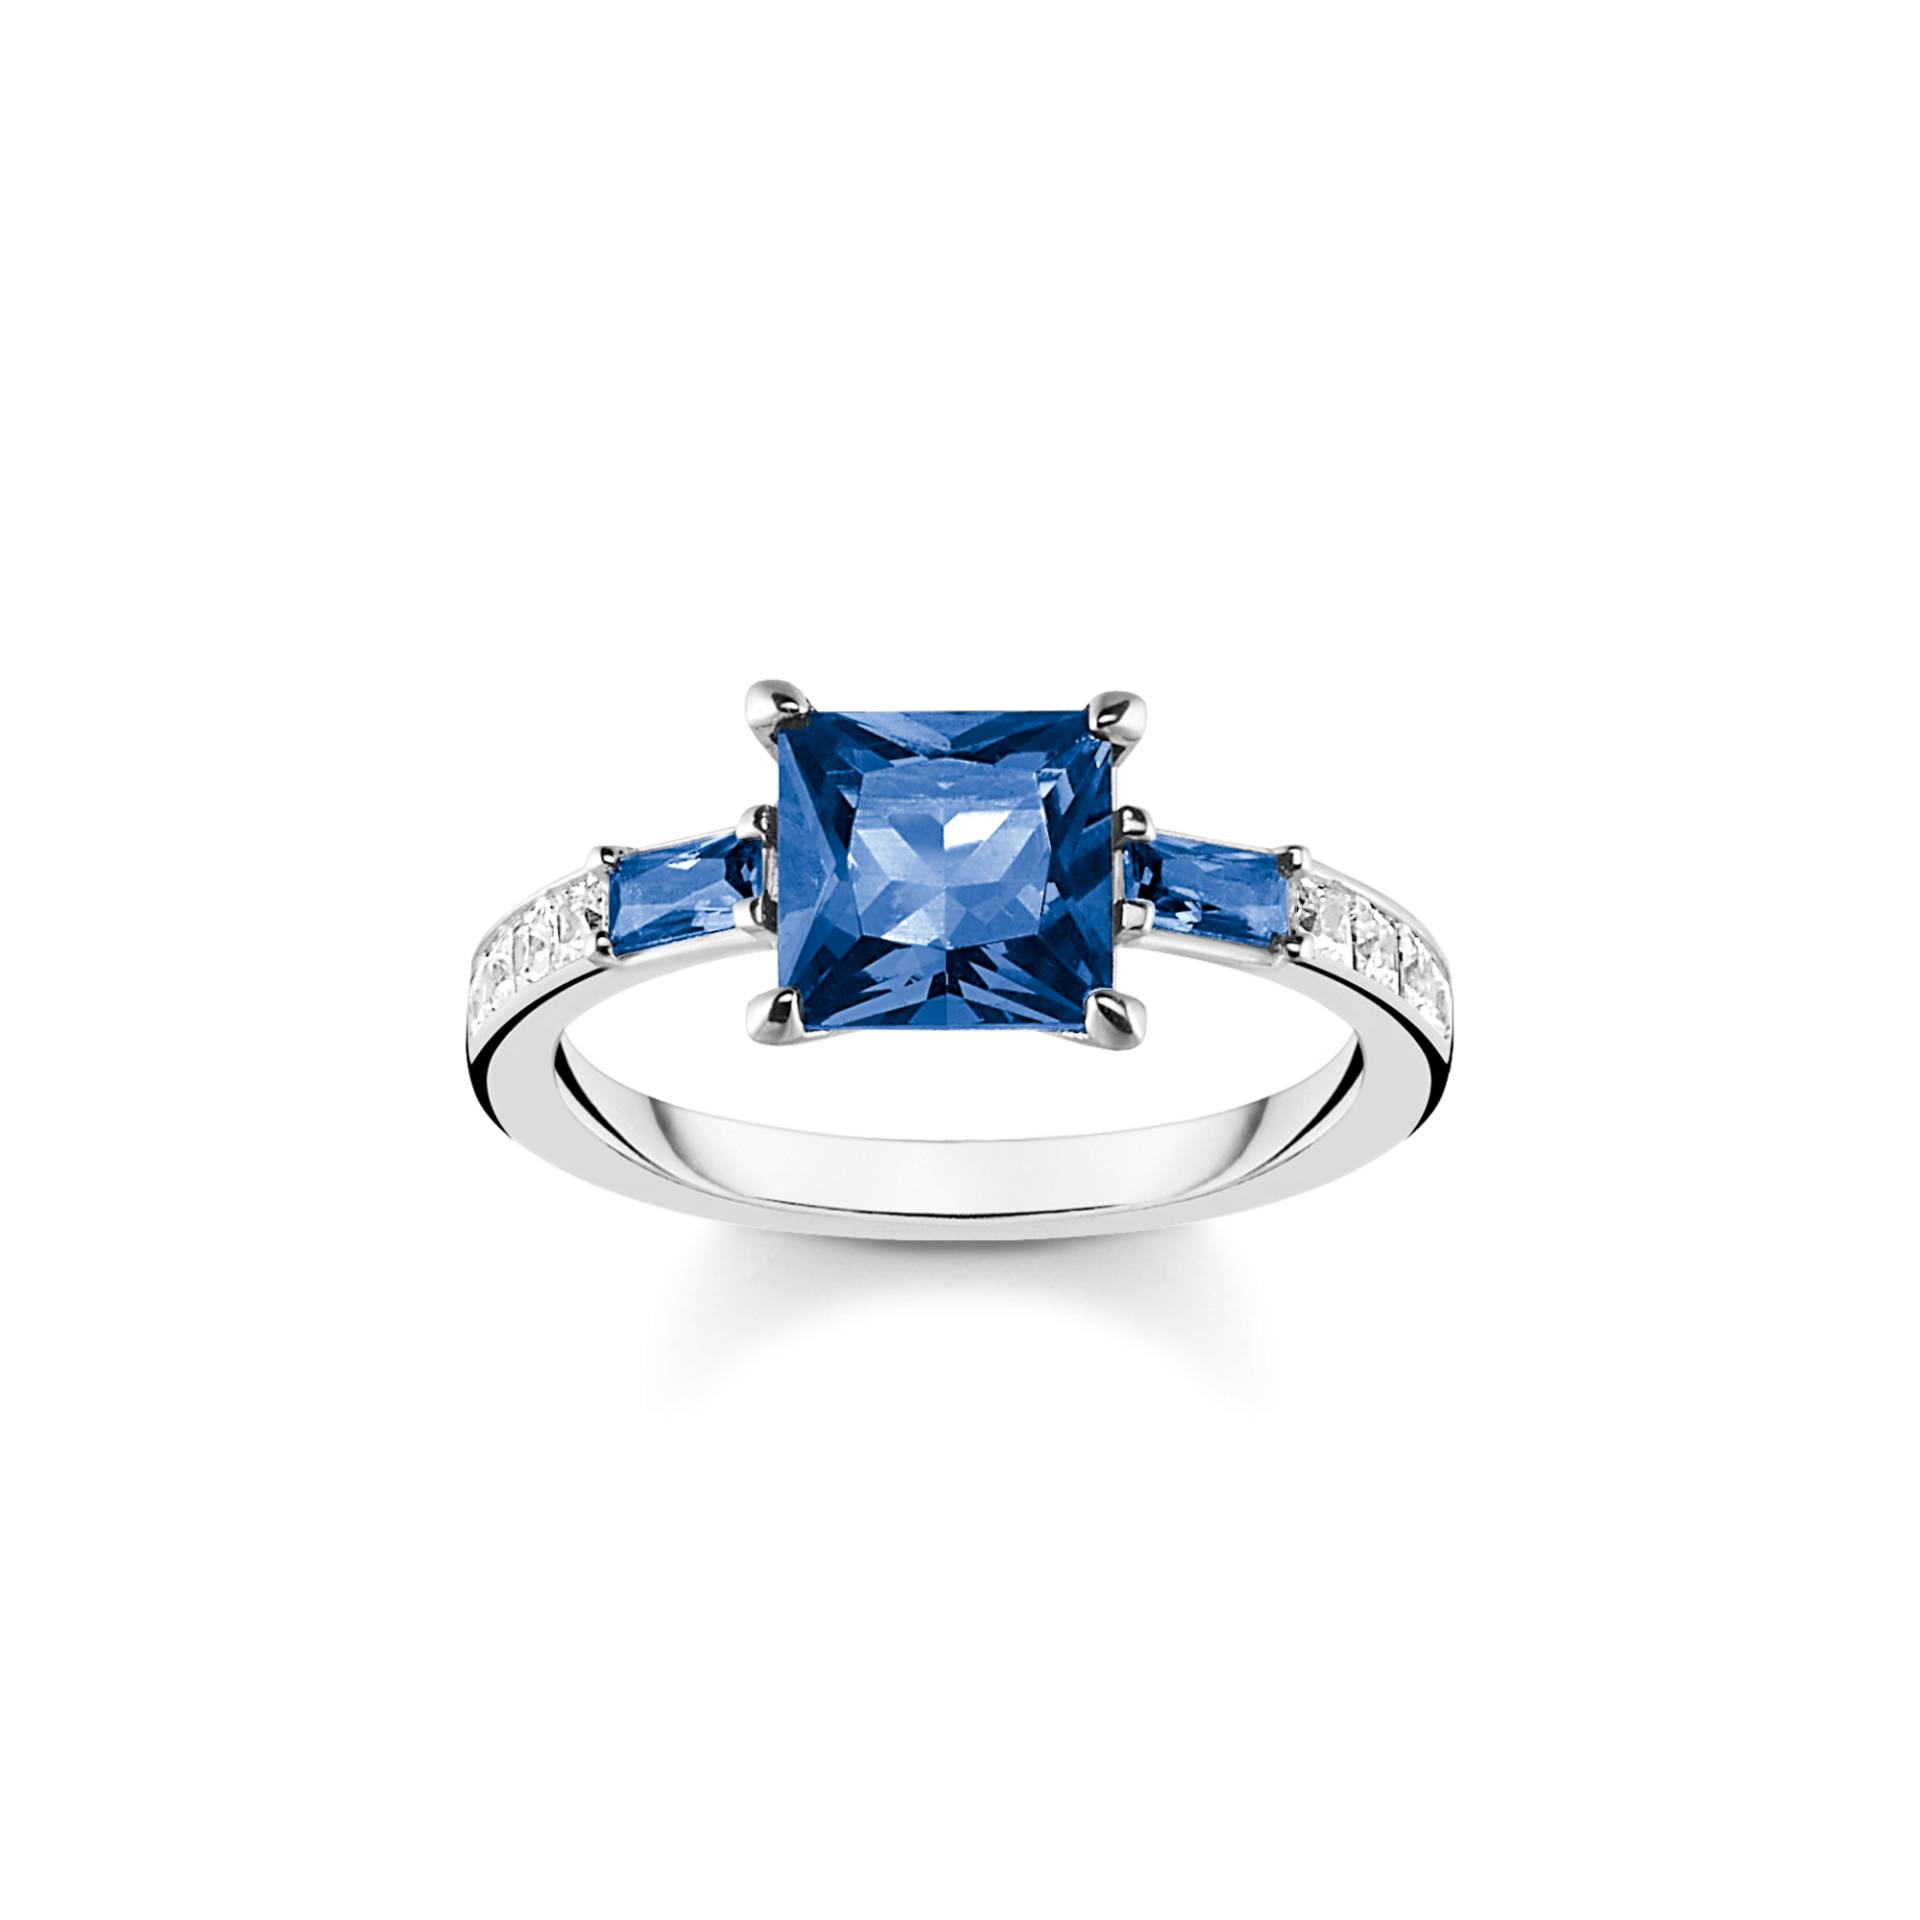 Thomas Sabo Ring mit blauen und weissen Steinen silber blau TR2380-166-1-50 von Thomas Sabo